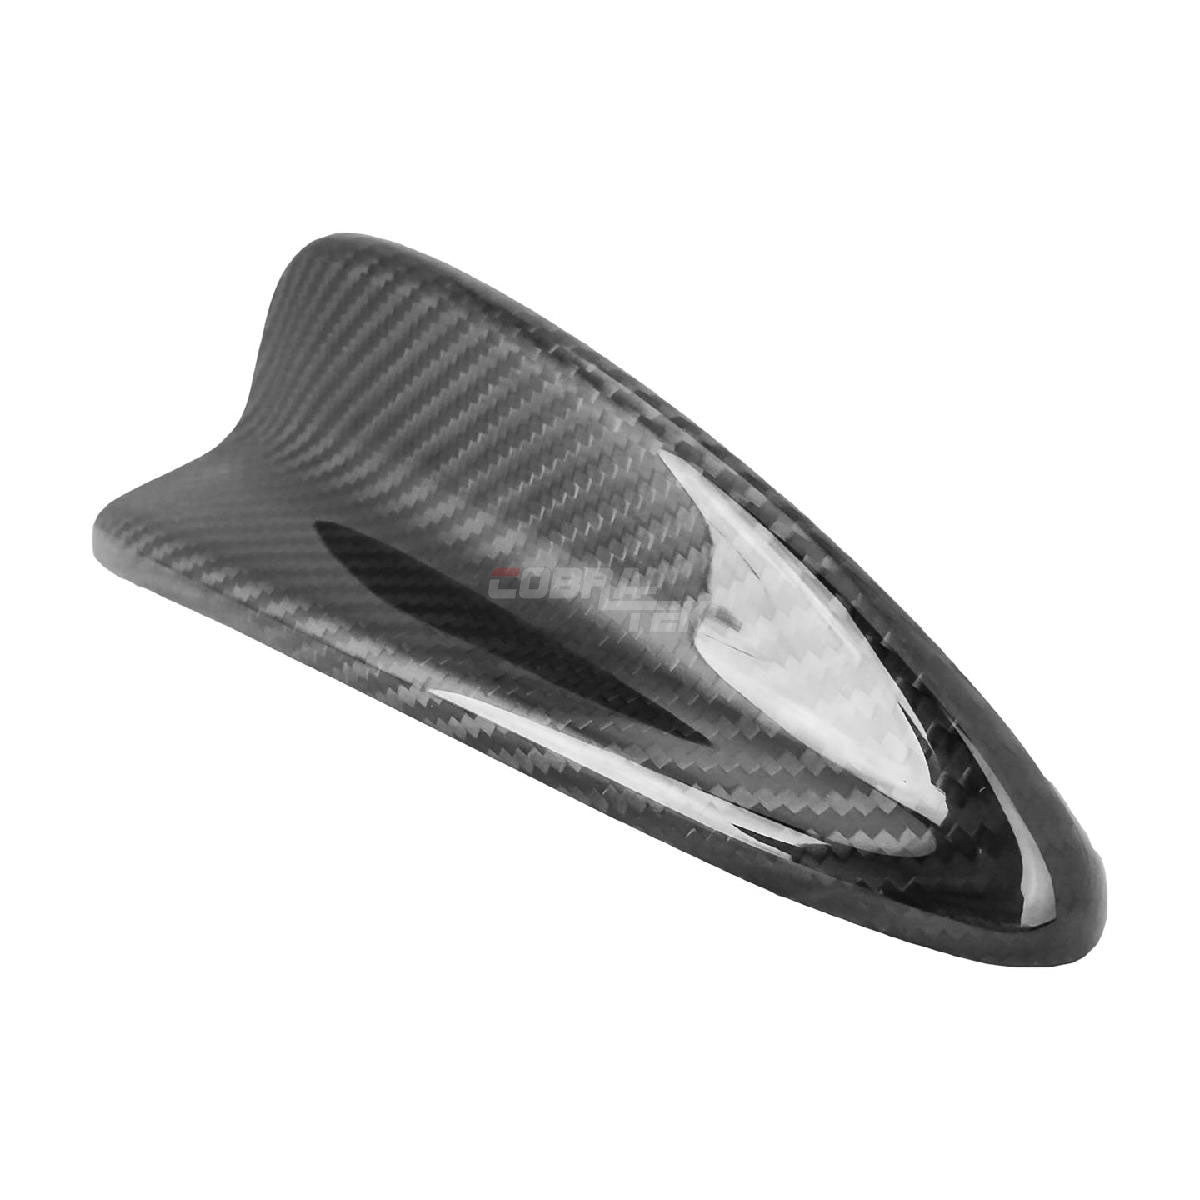 Universal - Gloss Black Real Carbon Fiber Shark Fin Antenna